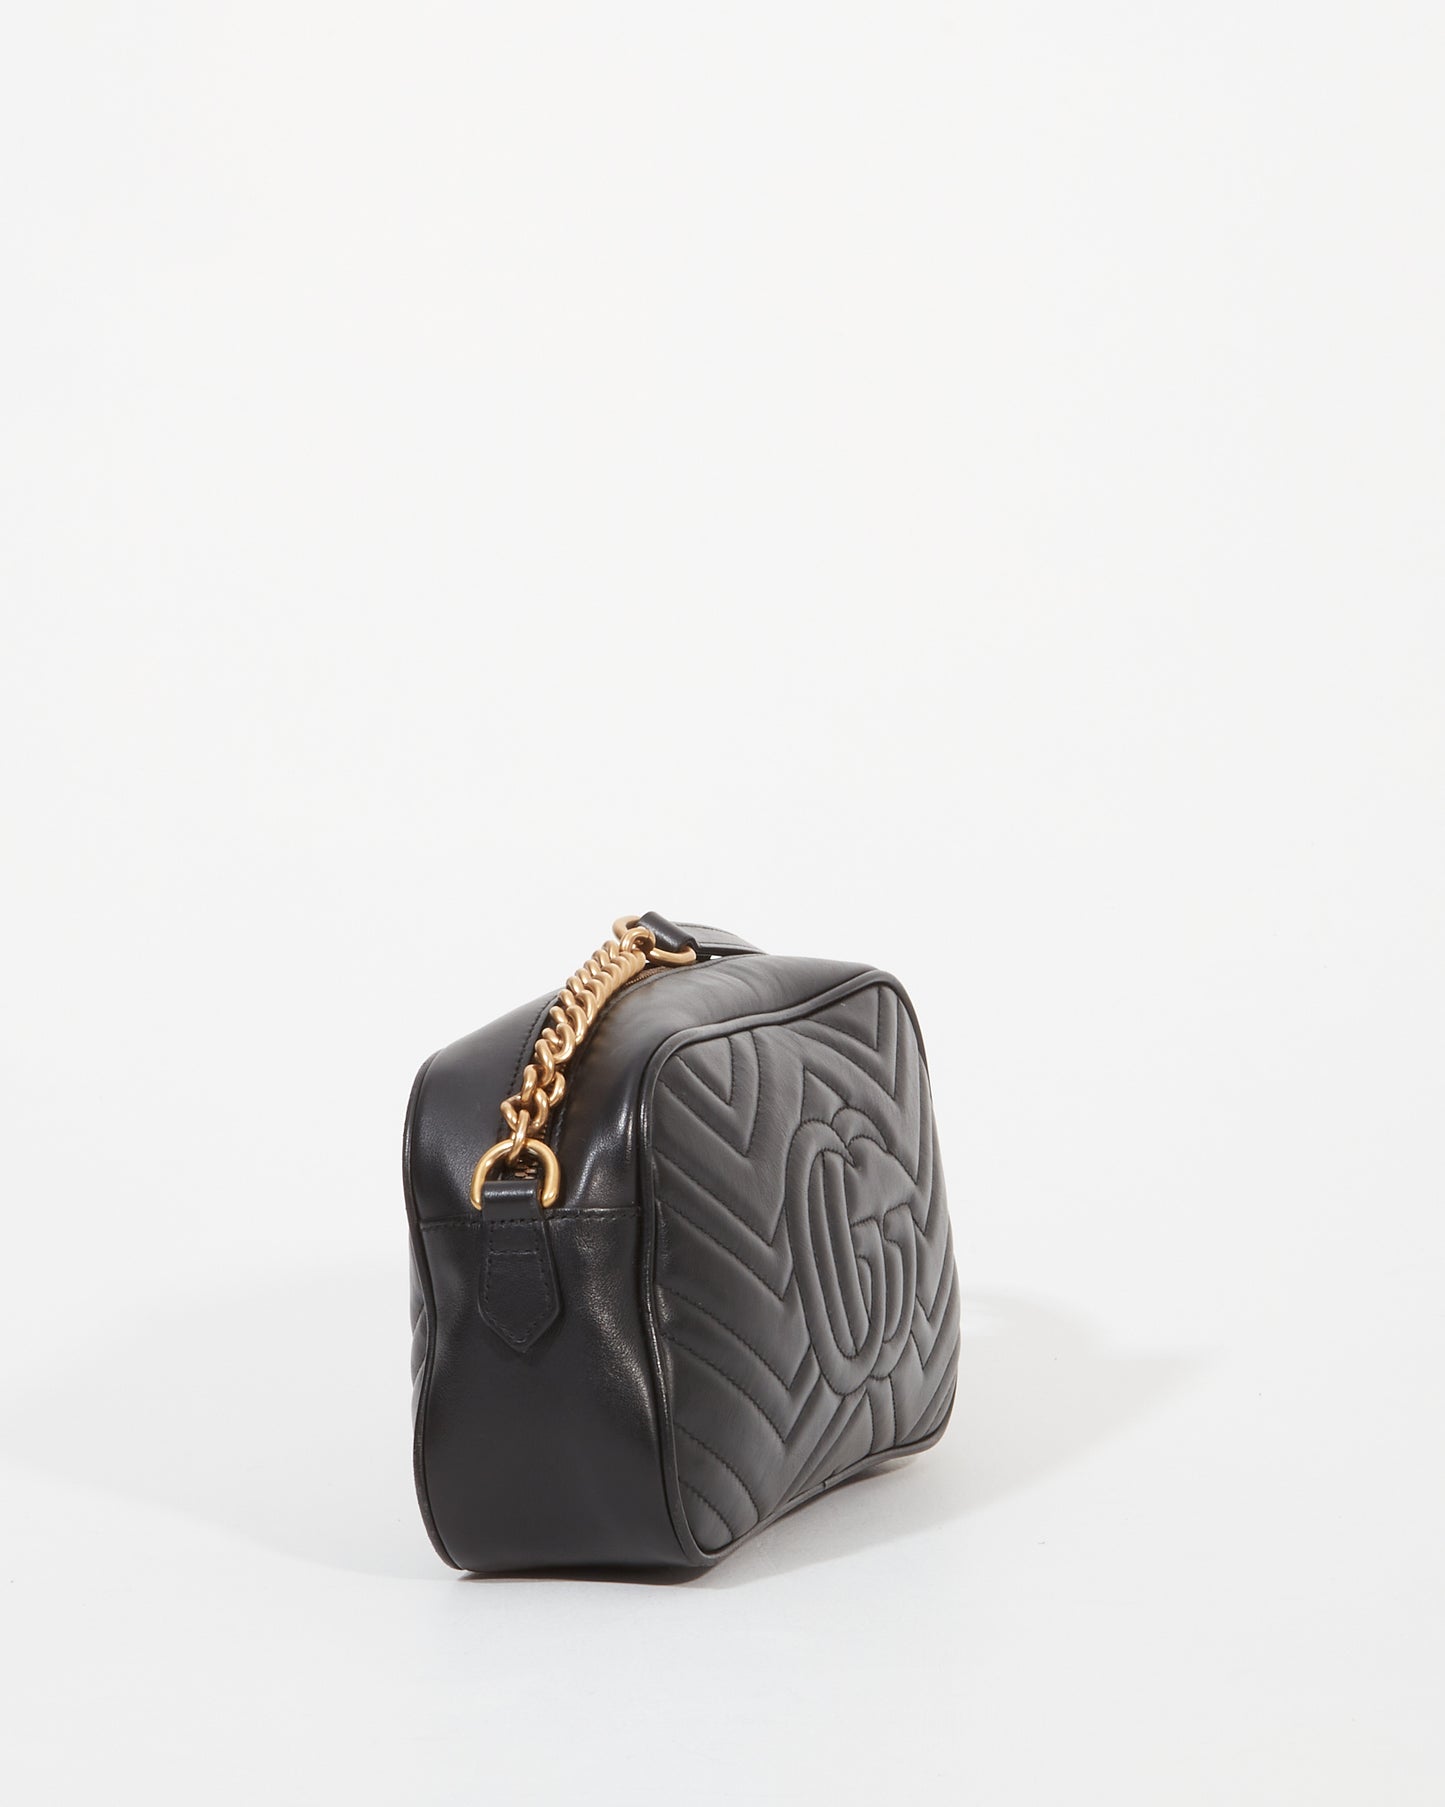 Gucci Black Leather Marmont GG Matelassé Small Shoulder Bag